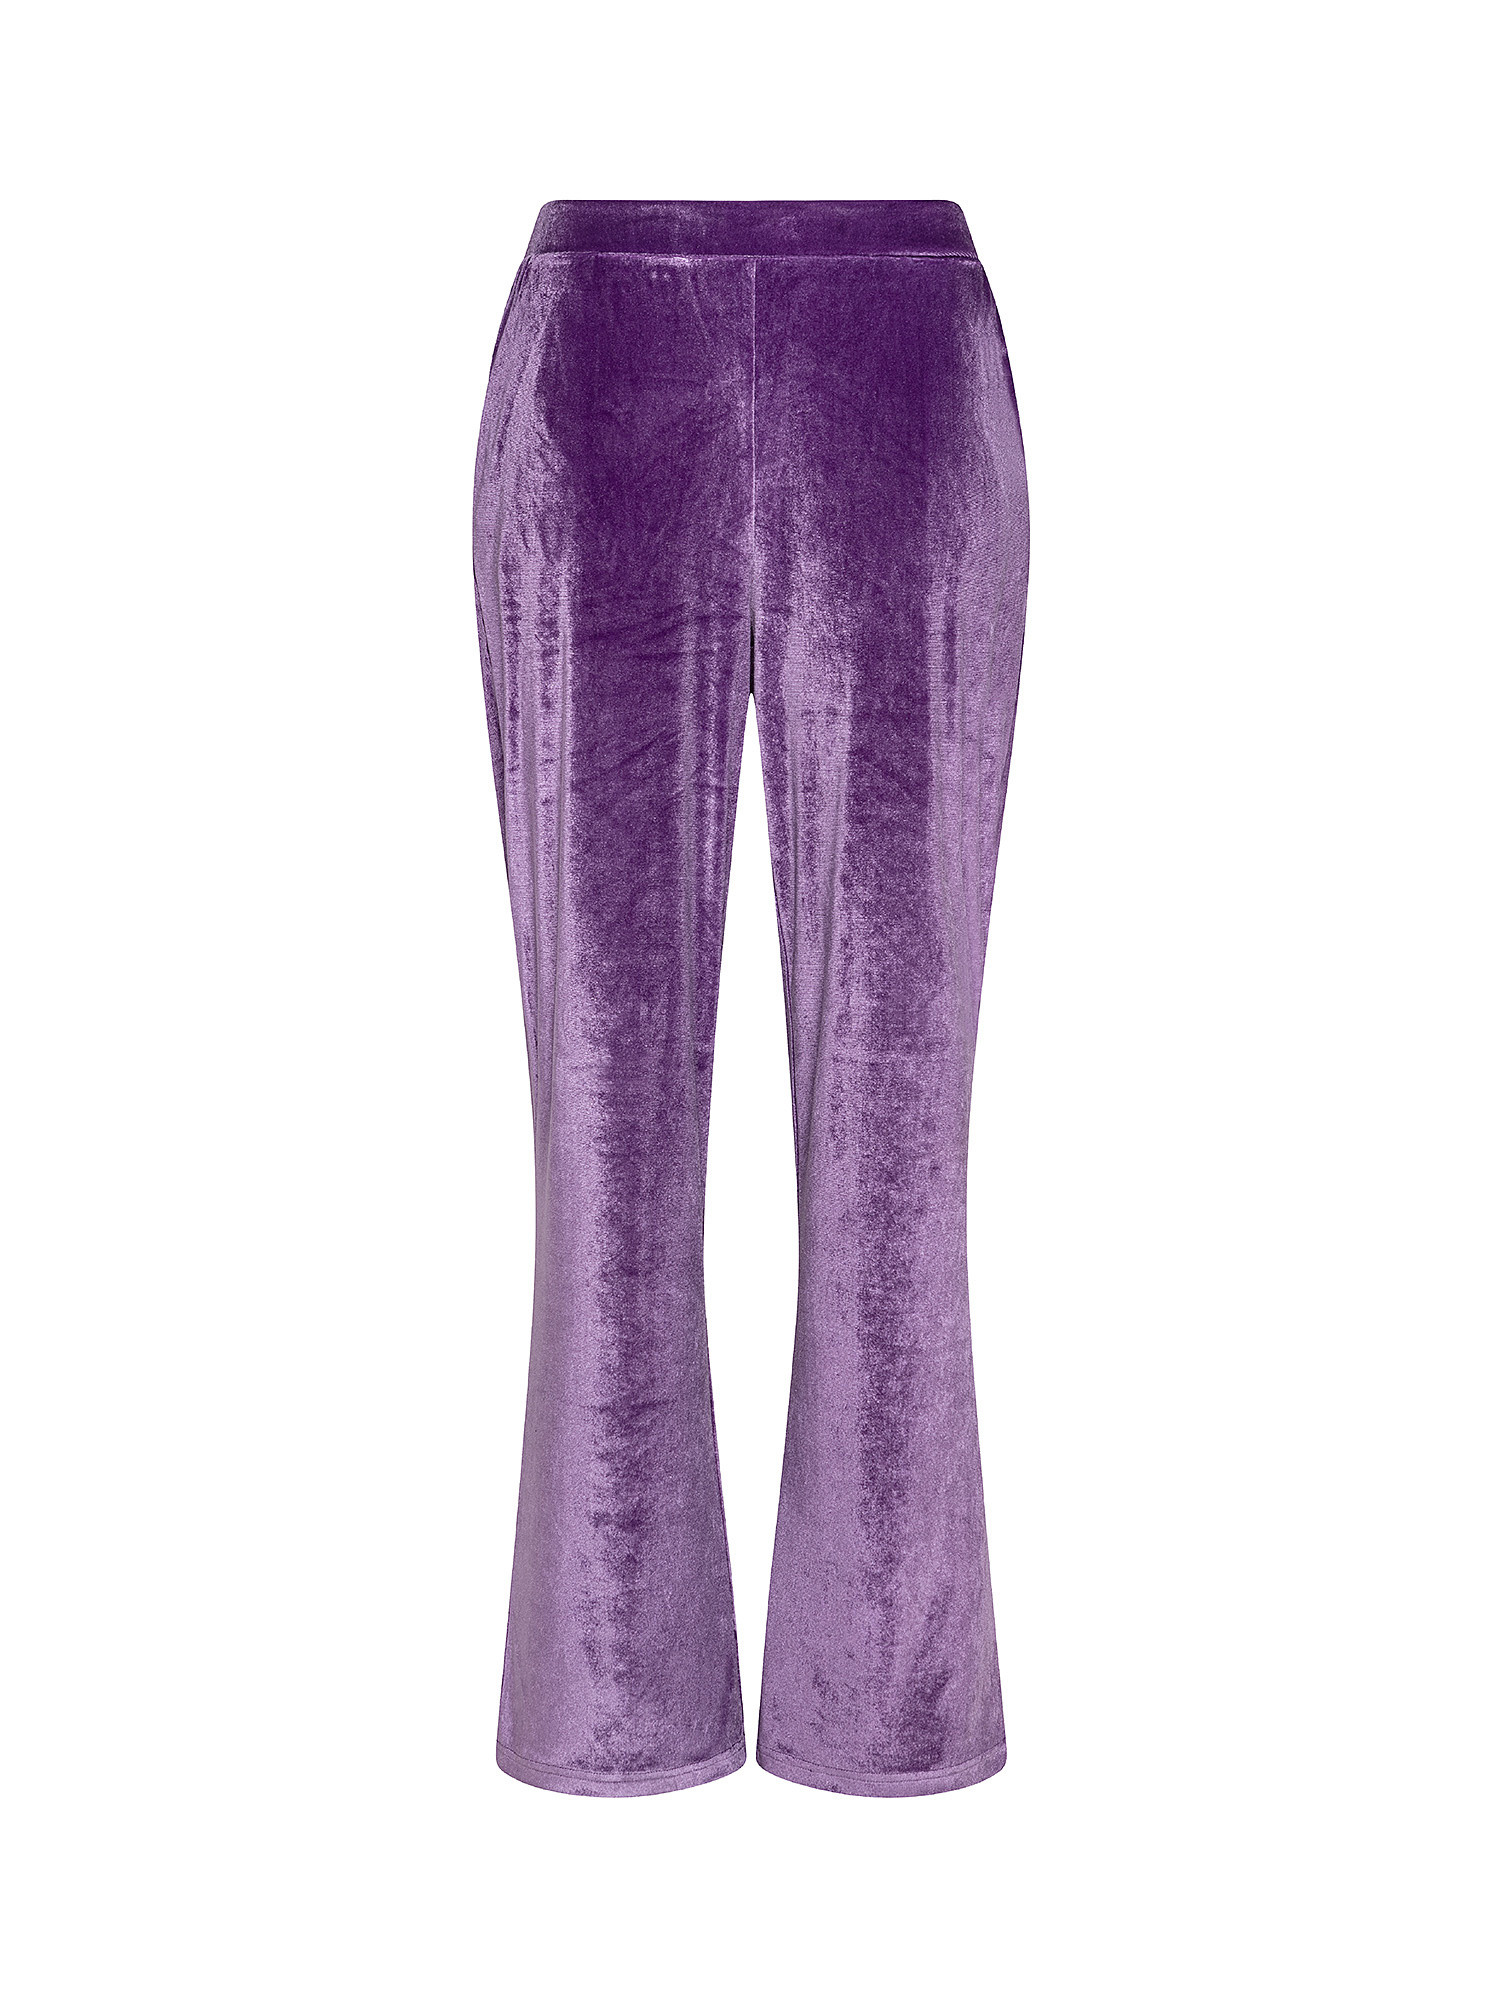 Велюровые брюки Koan Knitwear, фиолетовый брюки велюровые на меху клариса